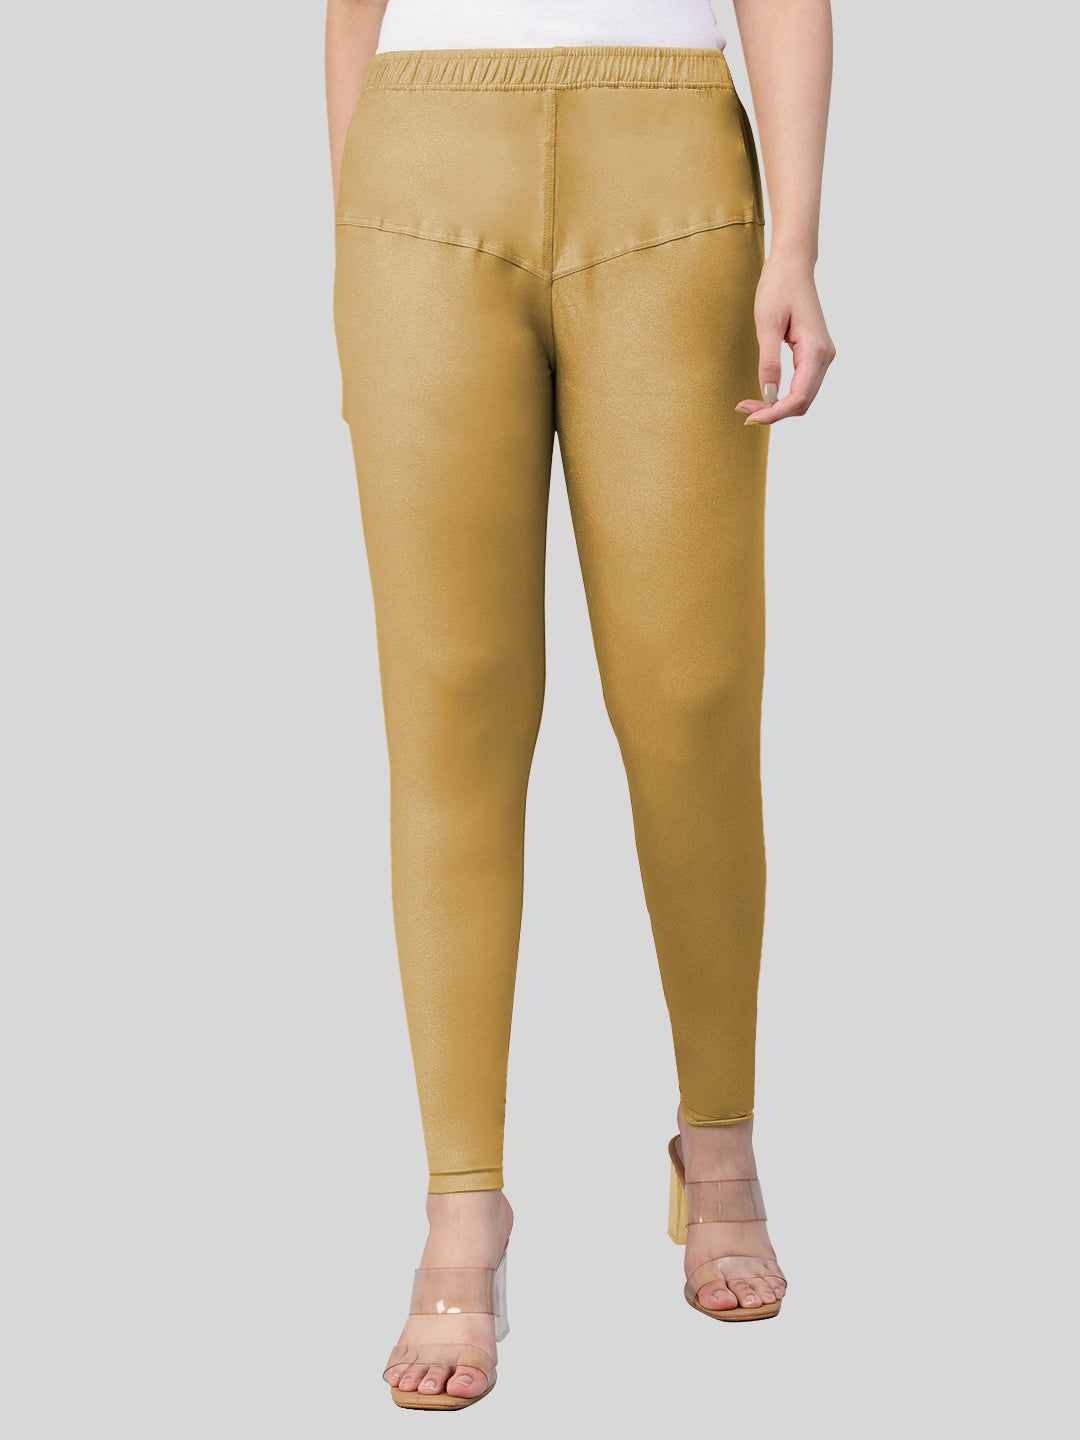 Buy Women's Shimmer Golden Leggings Medium(M) at